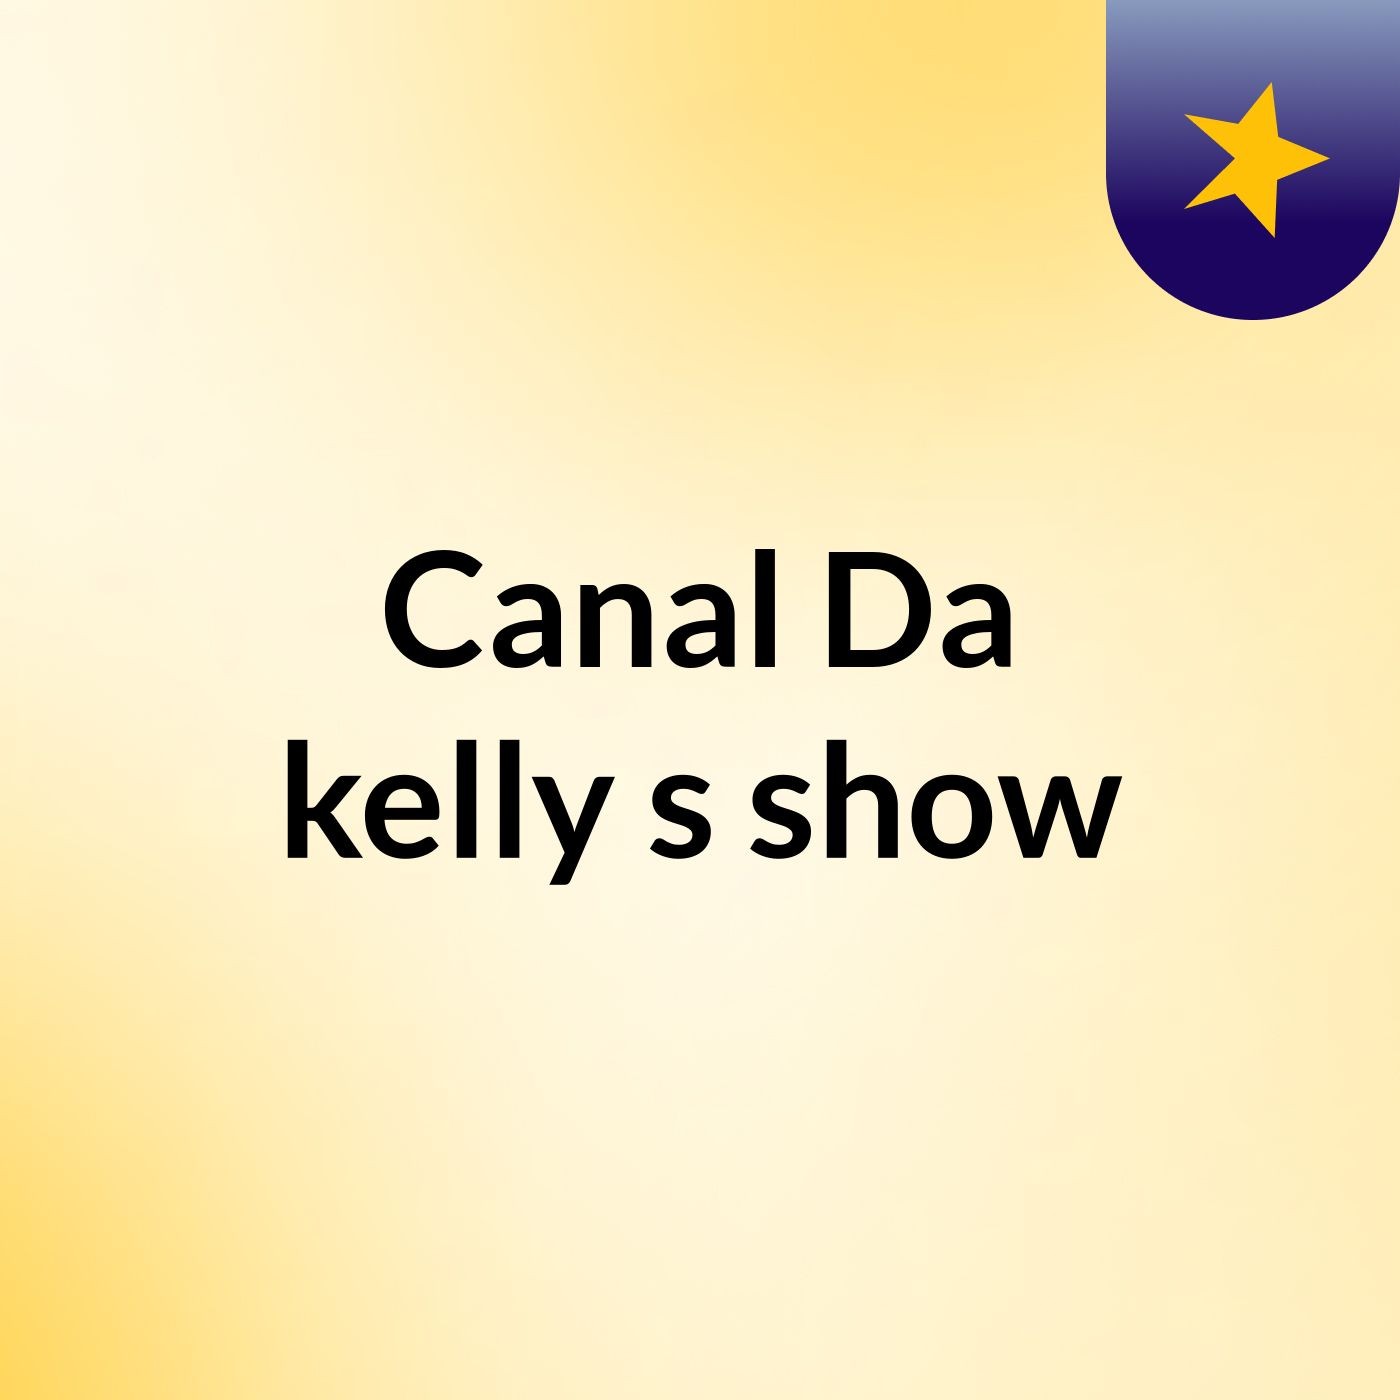 Canal Da kelly's show